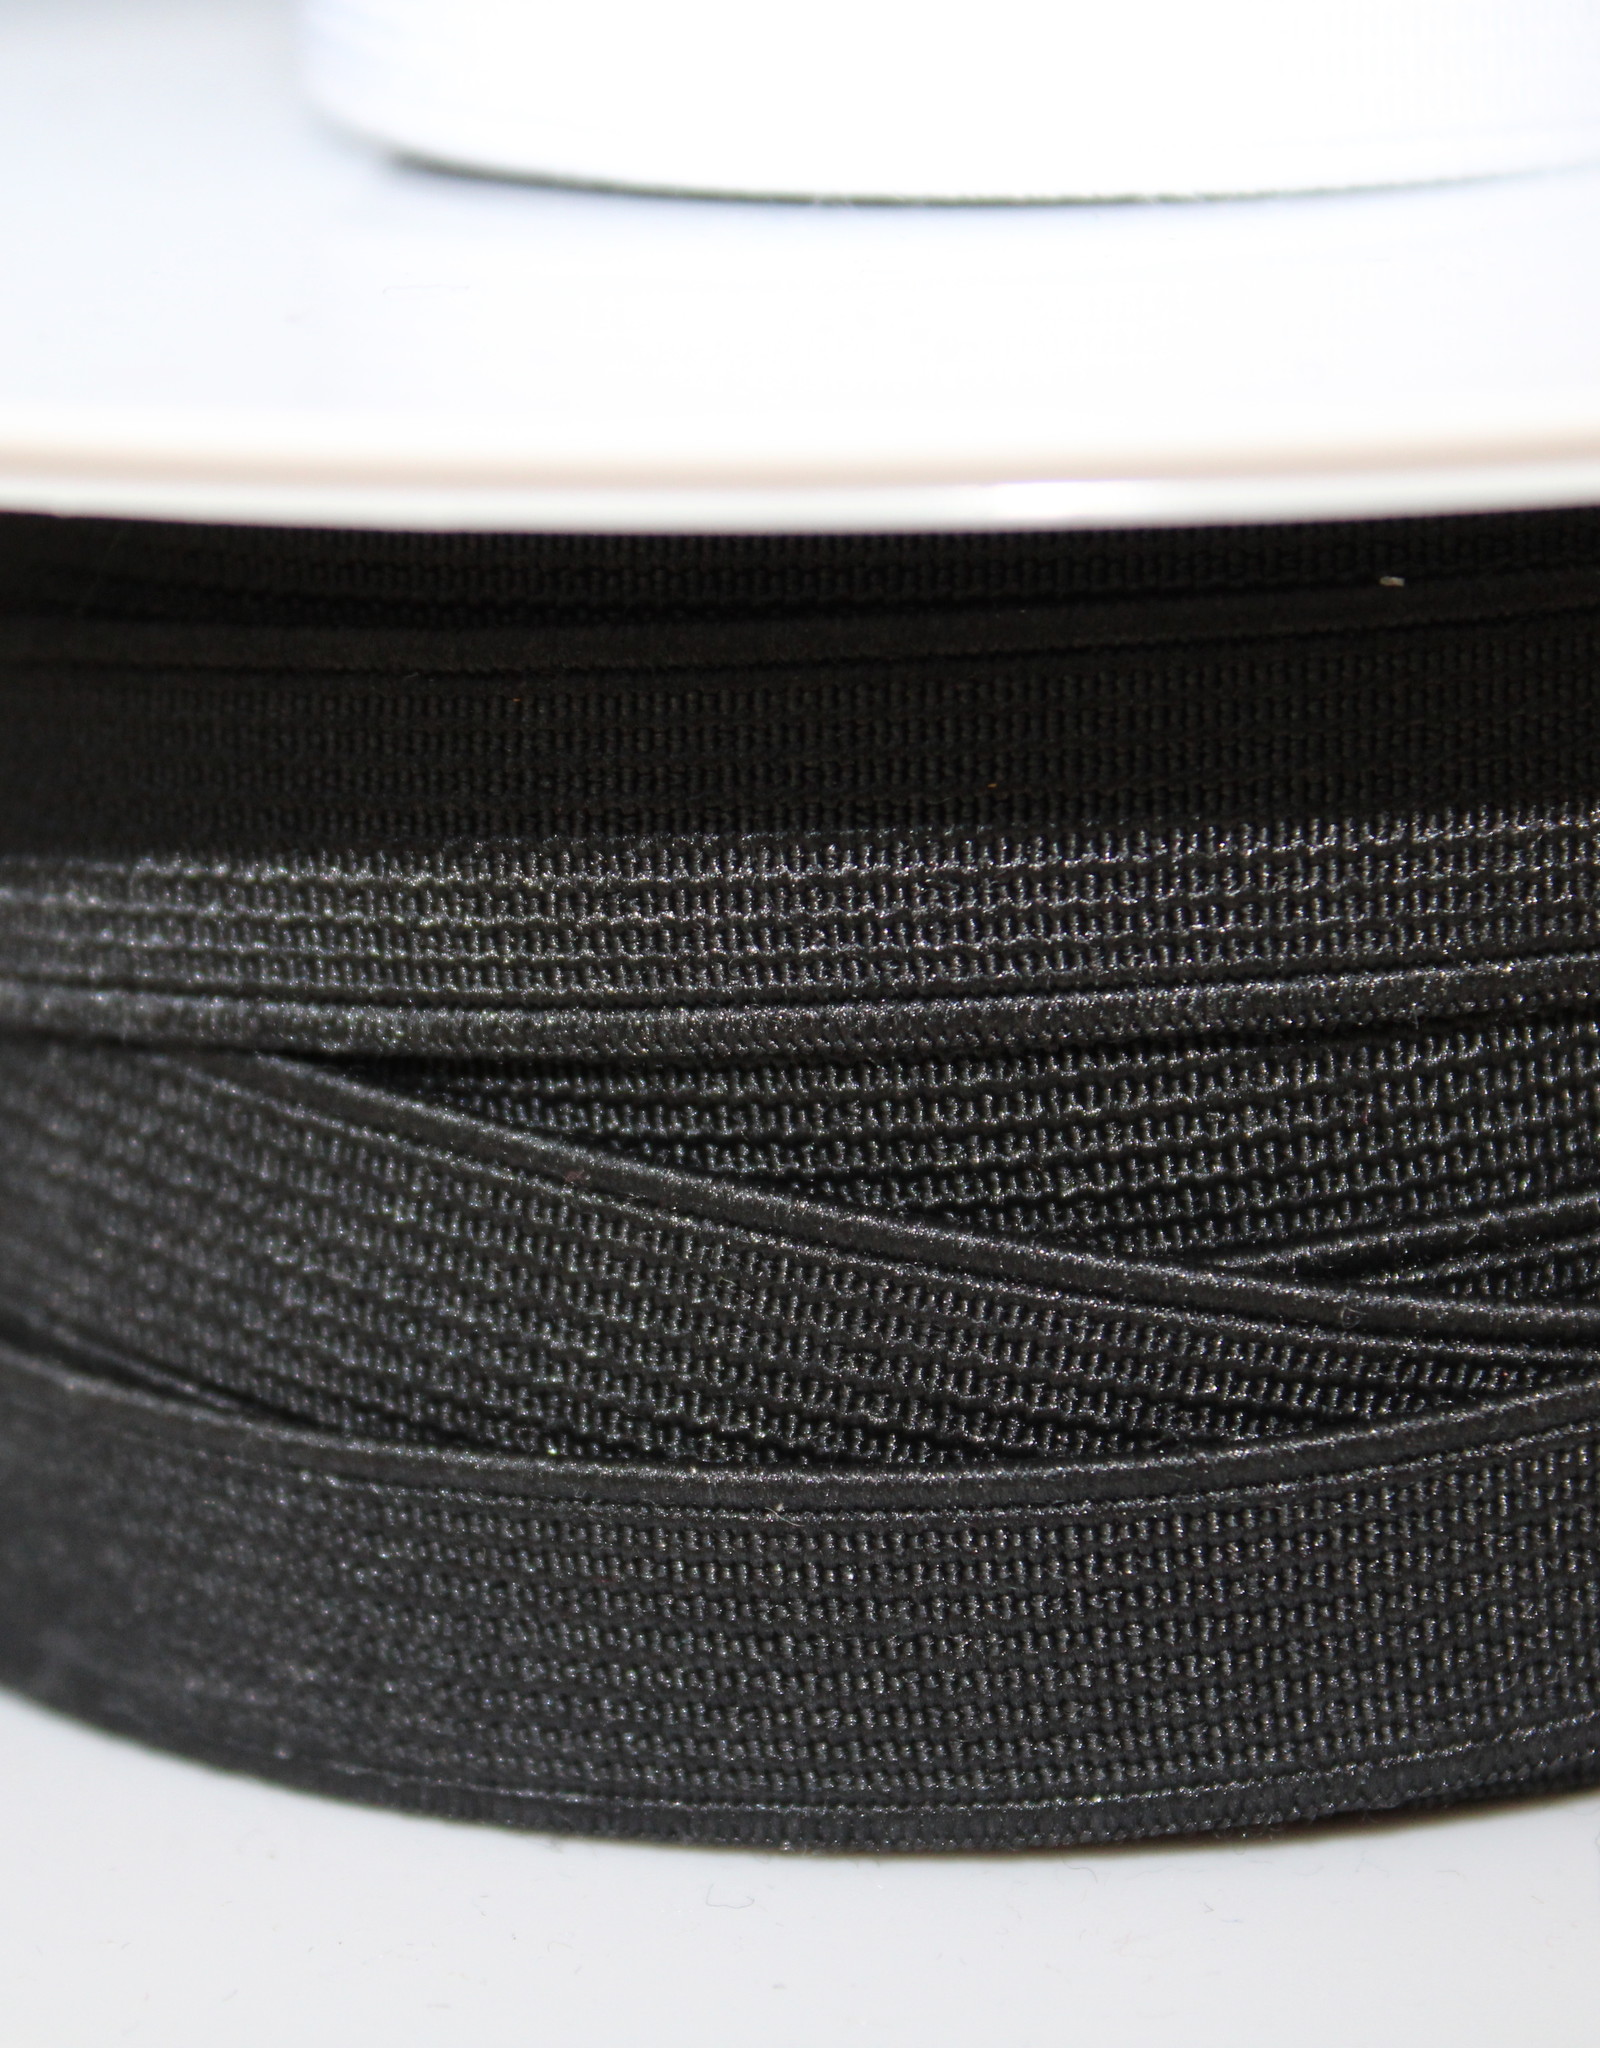 Standaard elastiek 2,5cm zwart